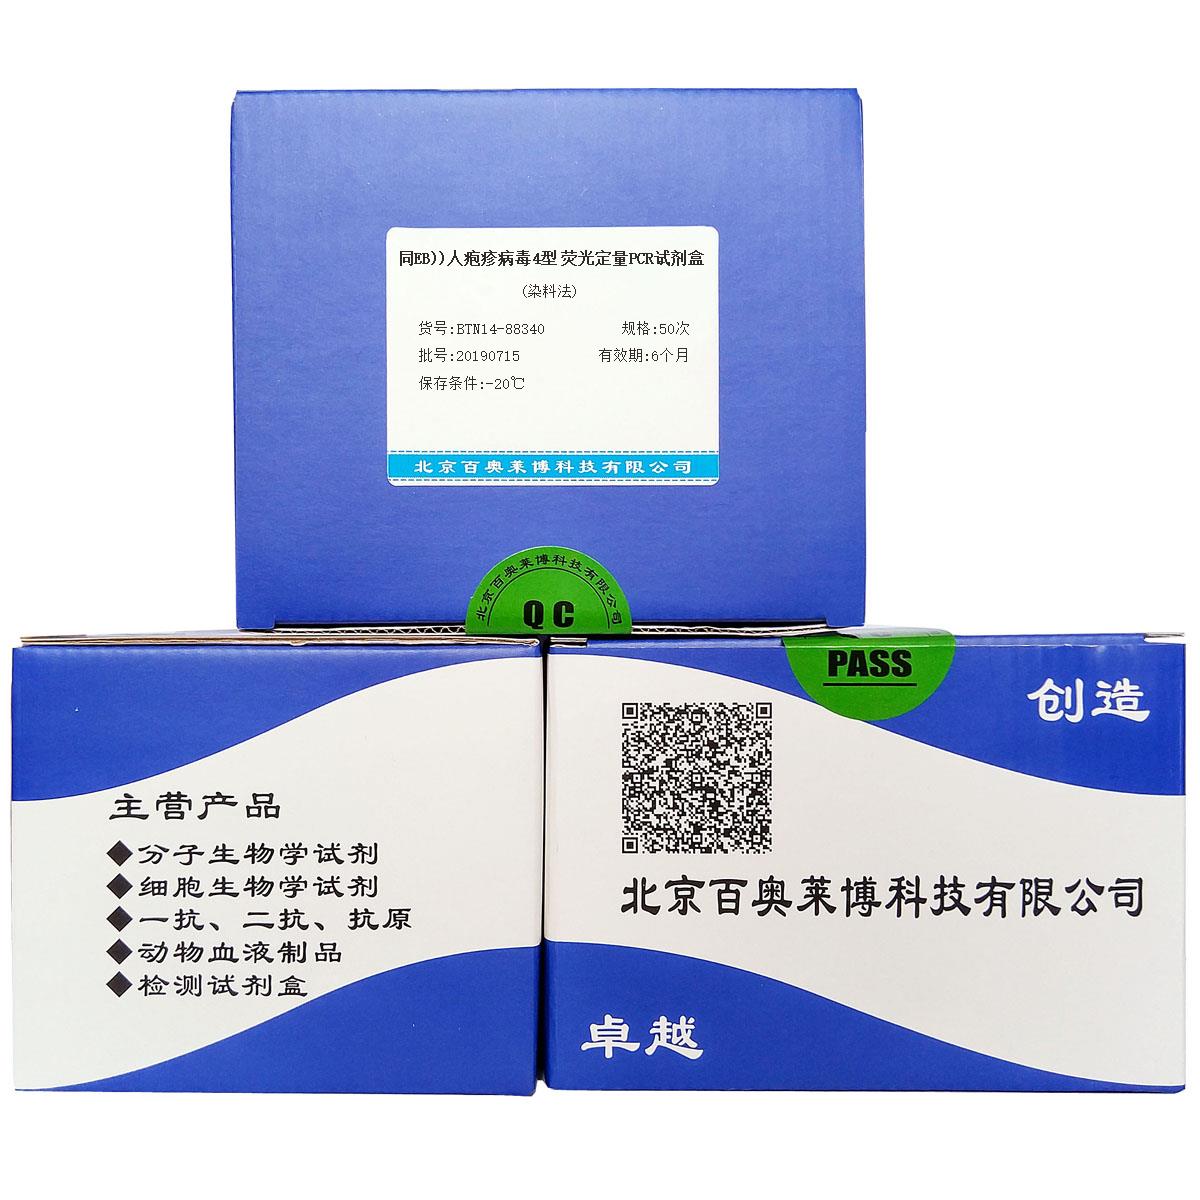 同EB))人疱疹病毒4型 荧光定量PCR试剂盒(染料法)